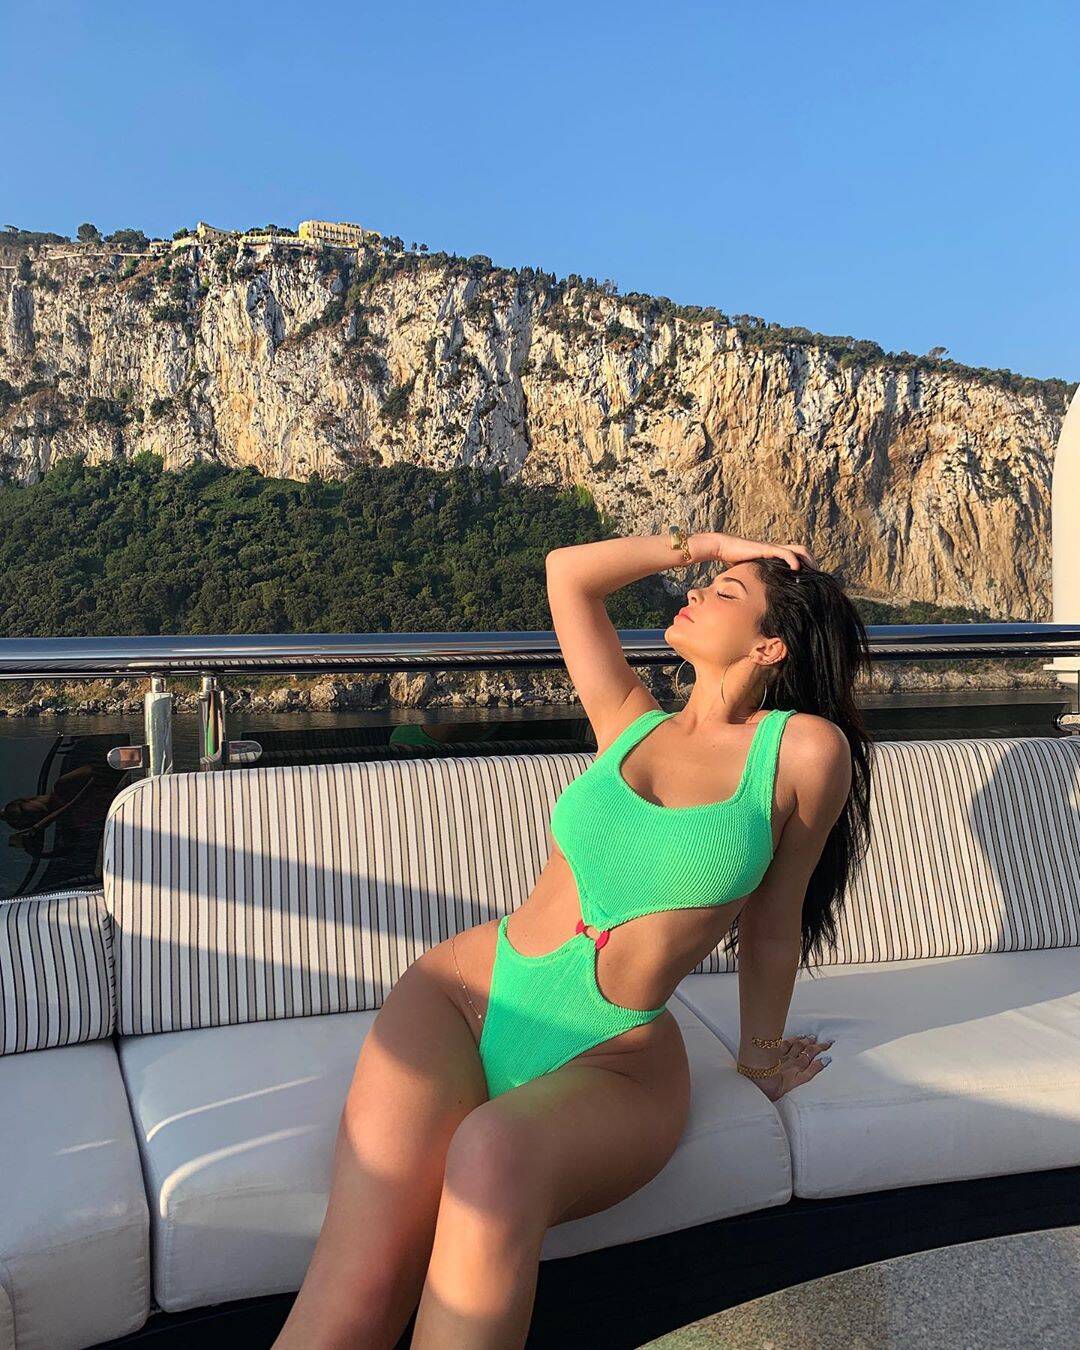 Kylie Jenner foi outra celebridade que escolheu o maiô neon. Foto: Reprodução/Instagram